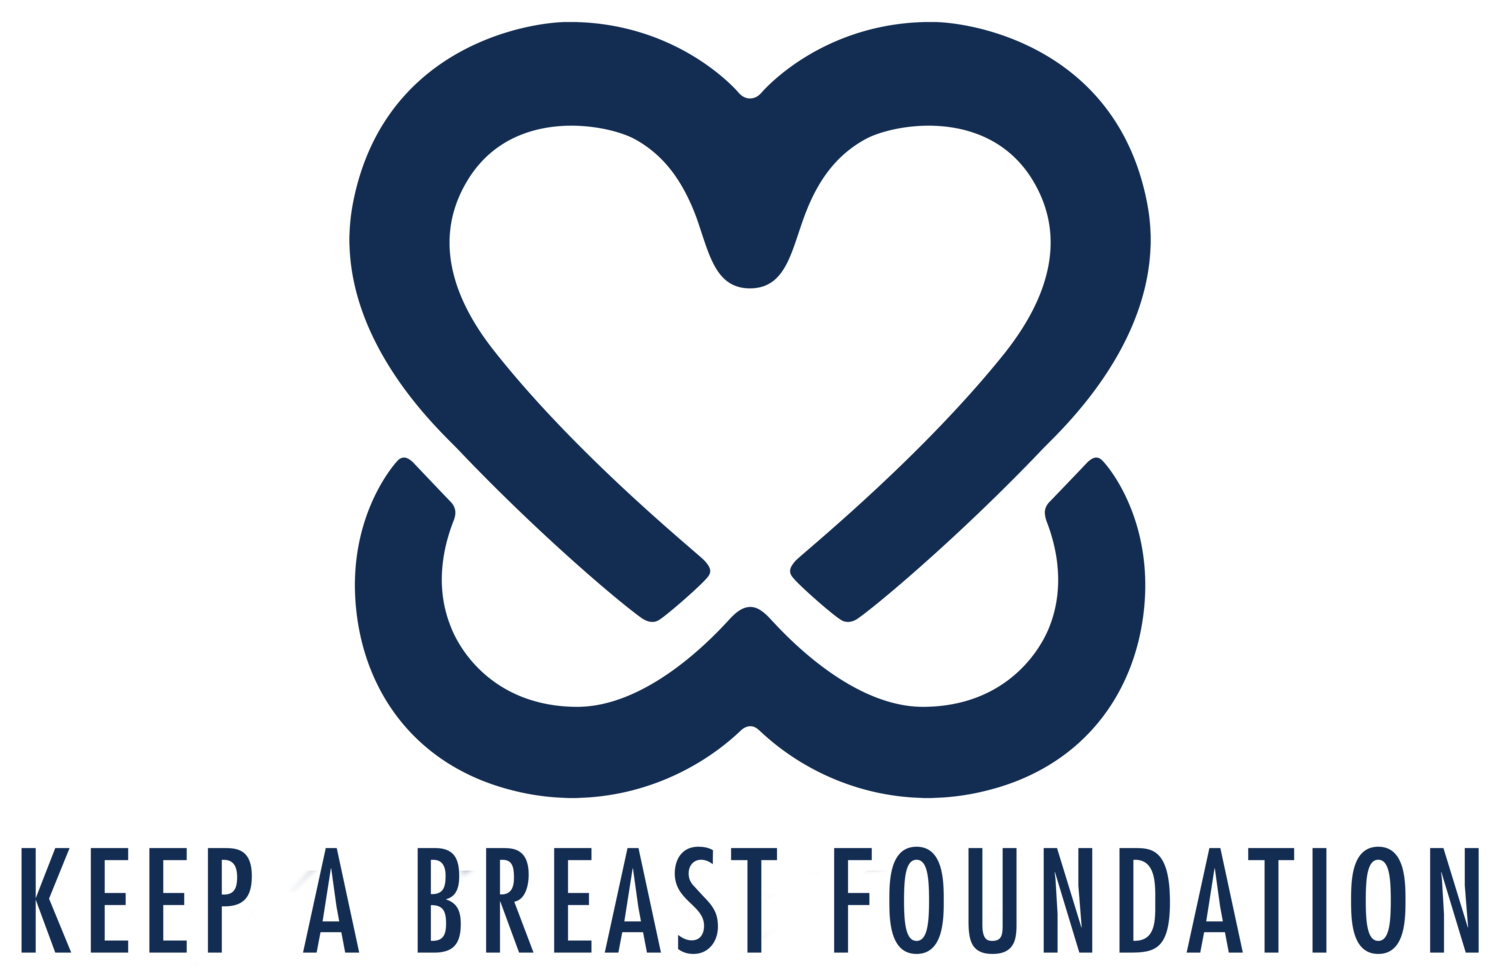 Keep a Breast Foundation logo